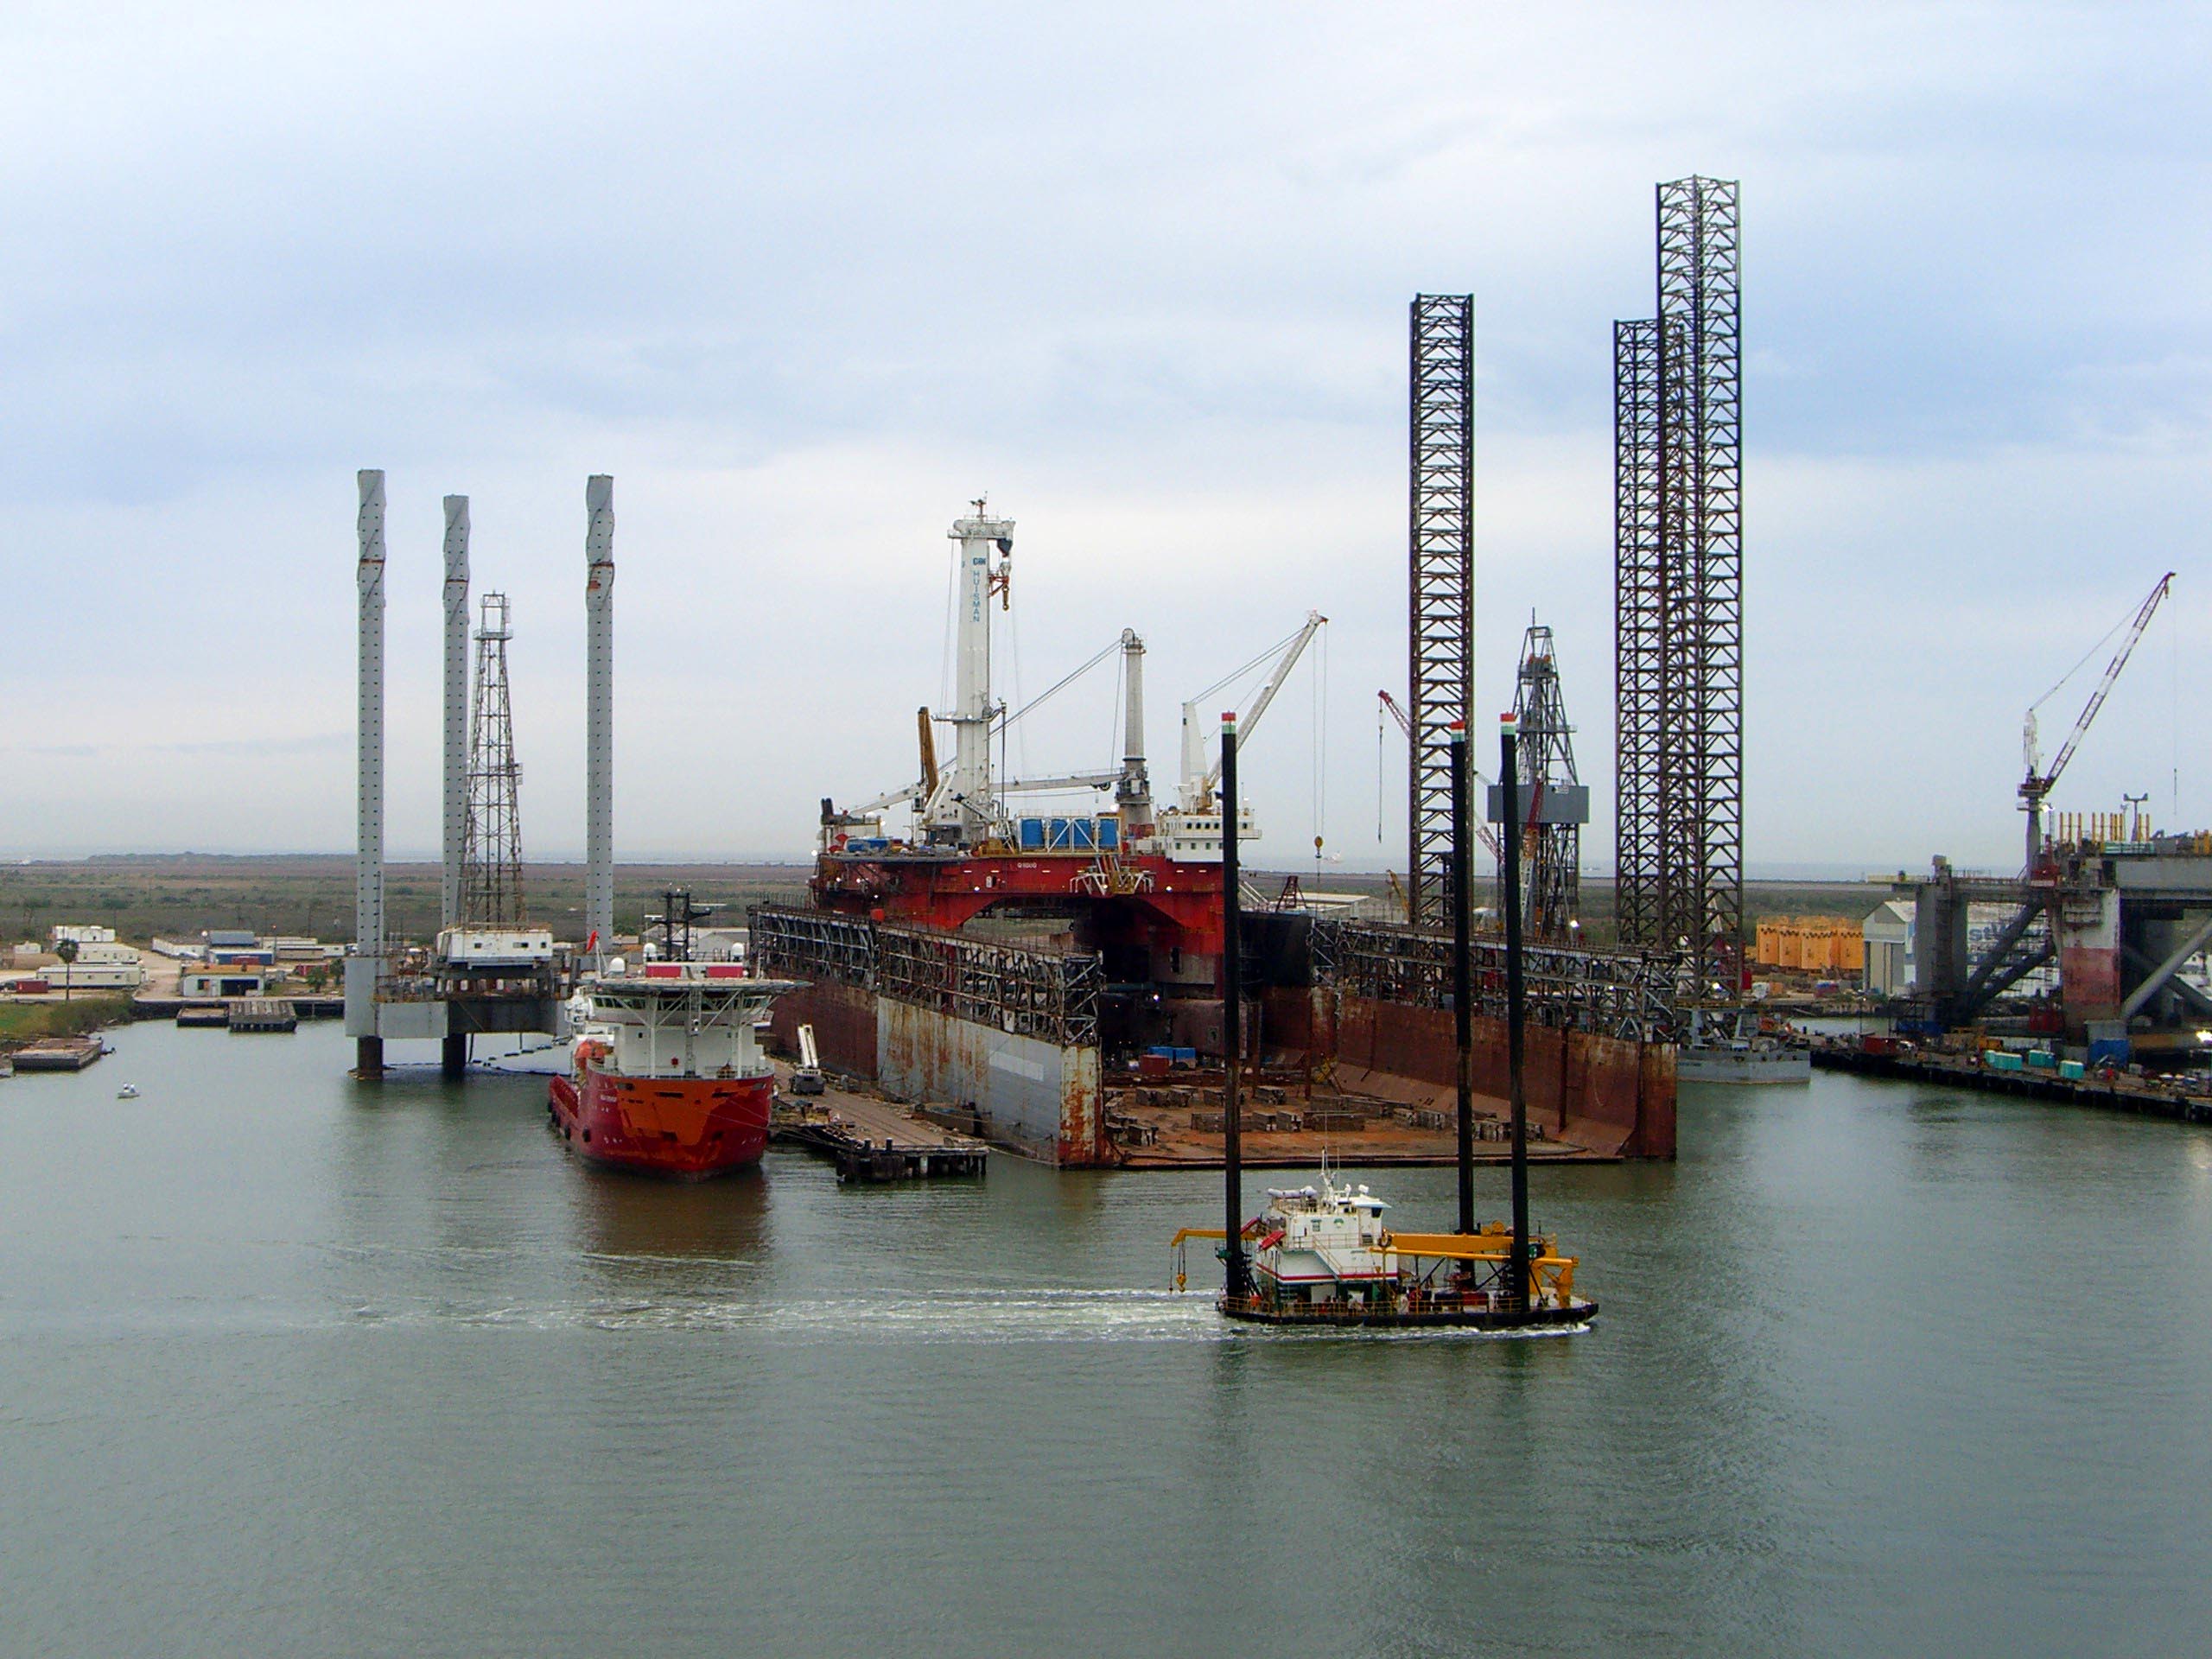 Dry dock in Galveston, November 2007